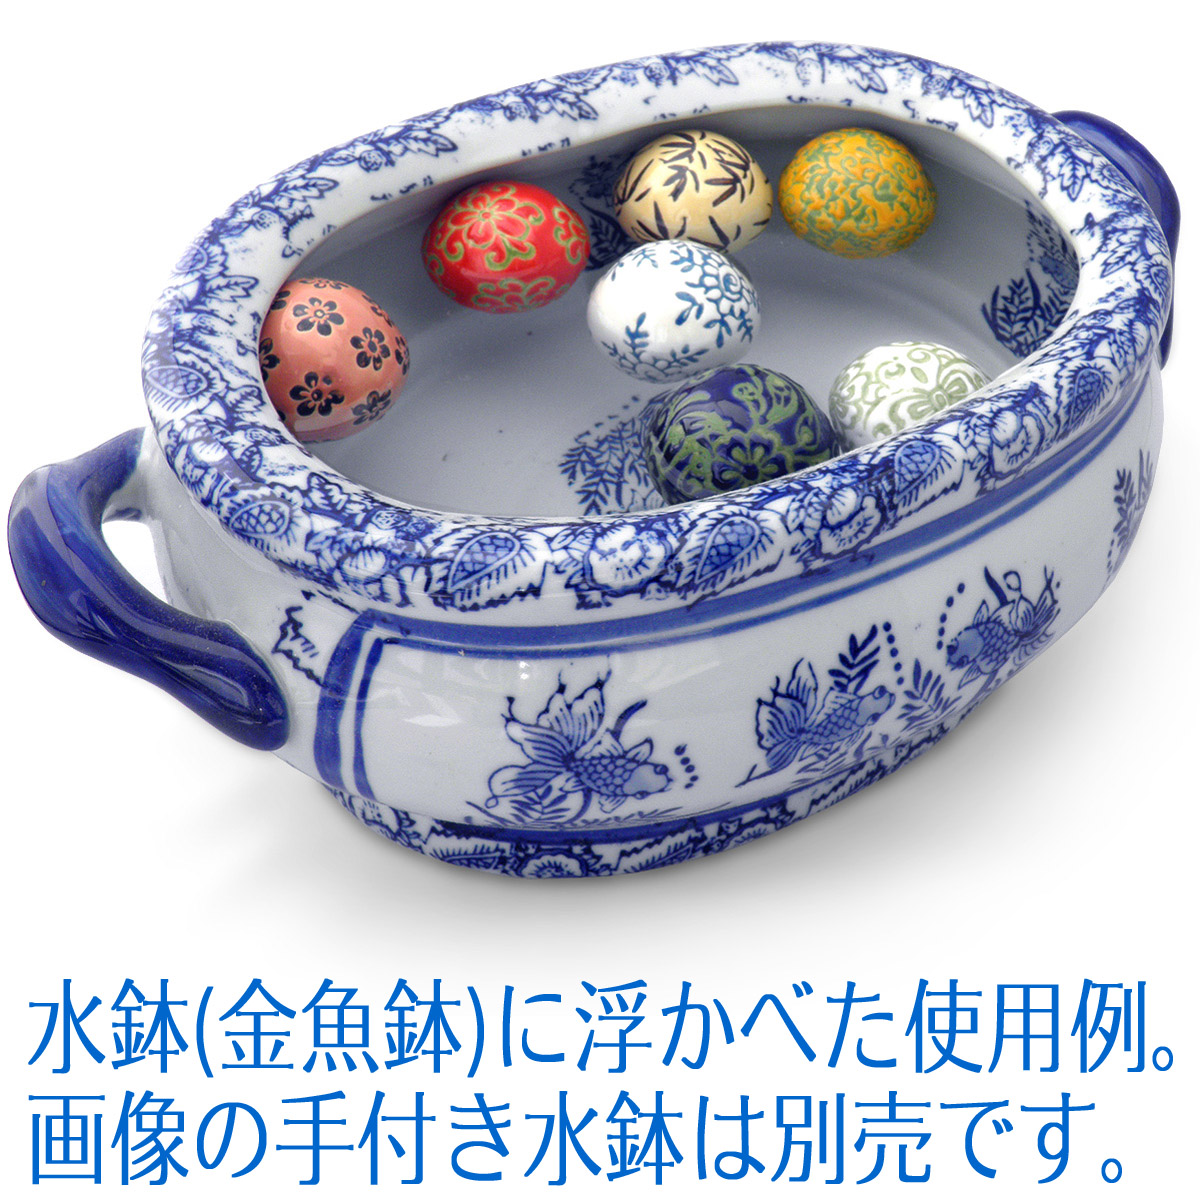 浮き玉 陶器 彩色 浮球 金魚鉢 水槽アクセサリー イメージ画像